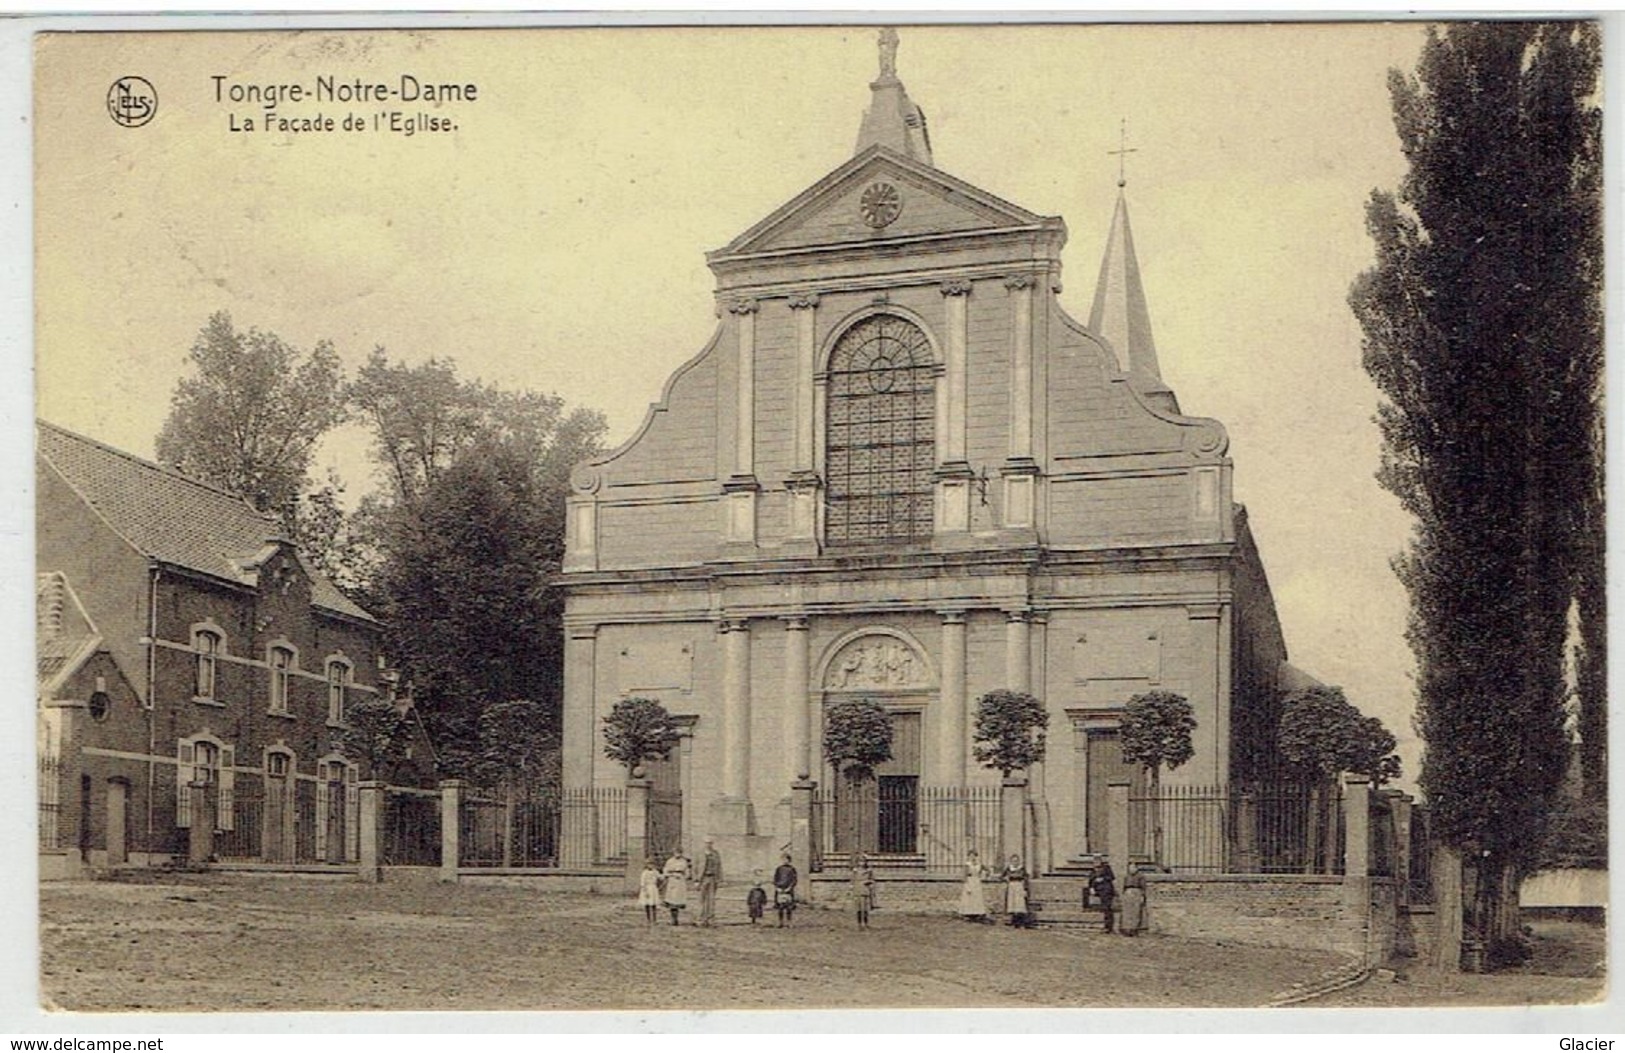 TONGRE-NOTRE-DAME - Chièvre - La Façade De L' Eglise - Relais 1928 - Chièvres